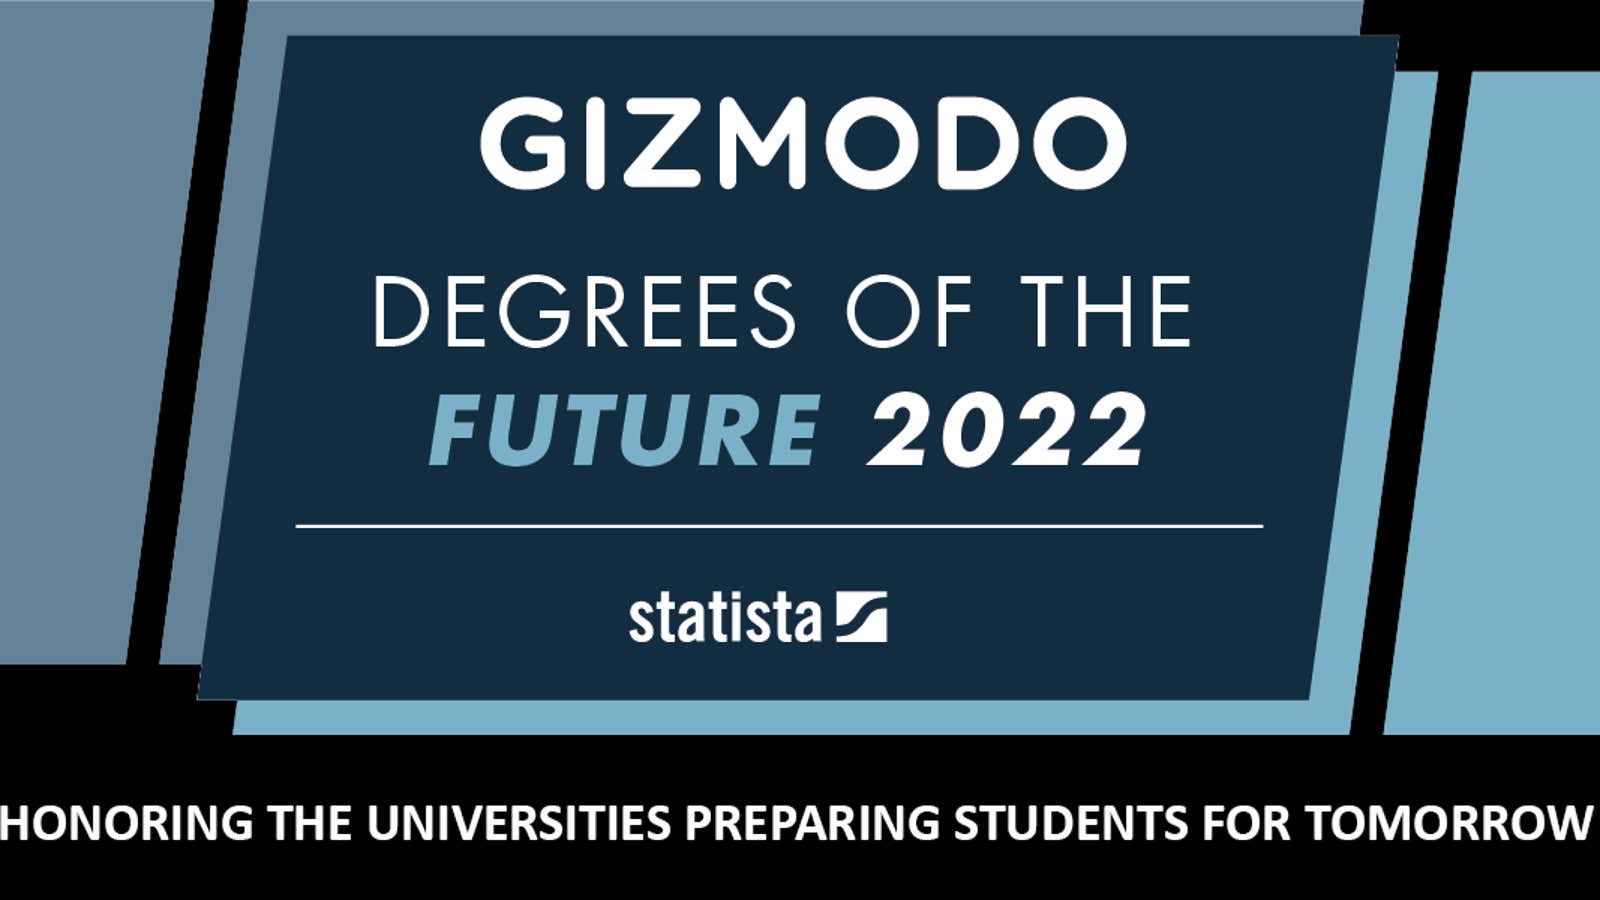 Gizmodo's Degrees of the Future 2022